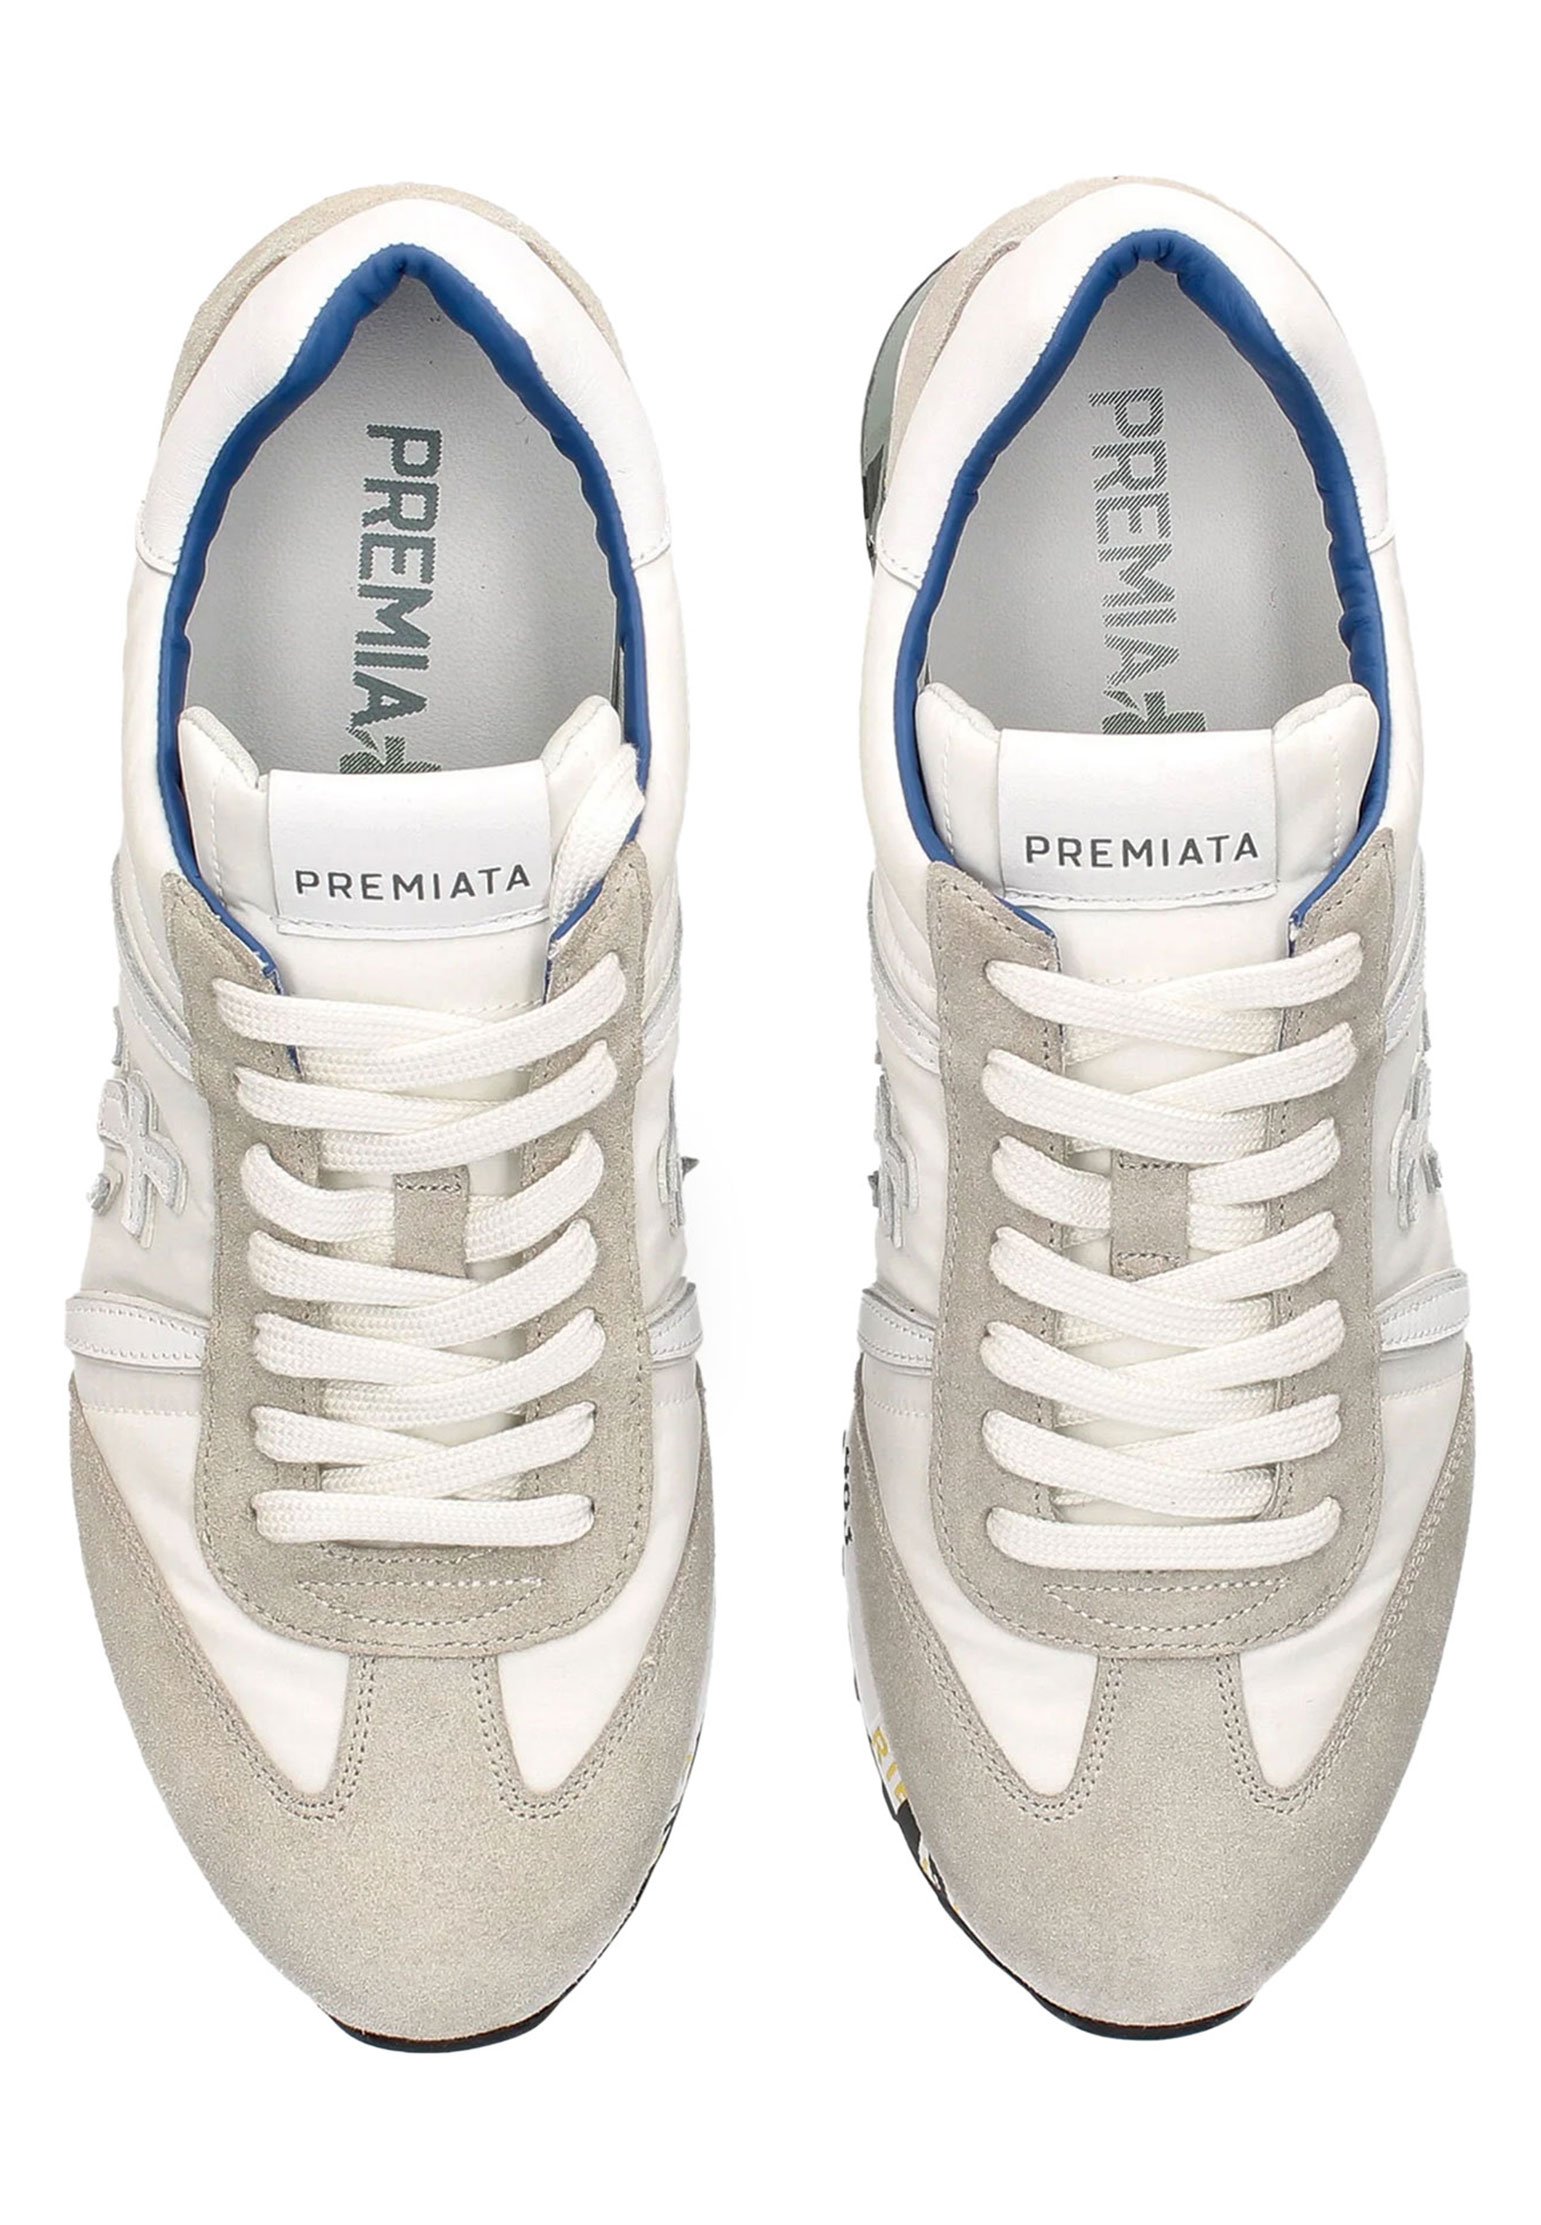 Sneakers PREMIATA Color: white (Code: 4175) in online store Allure